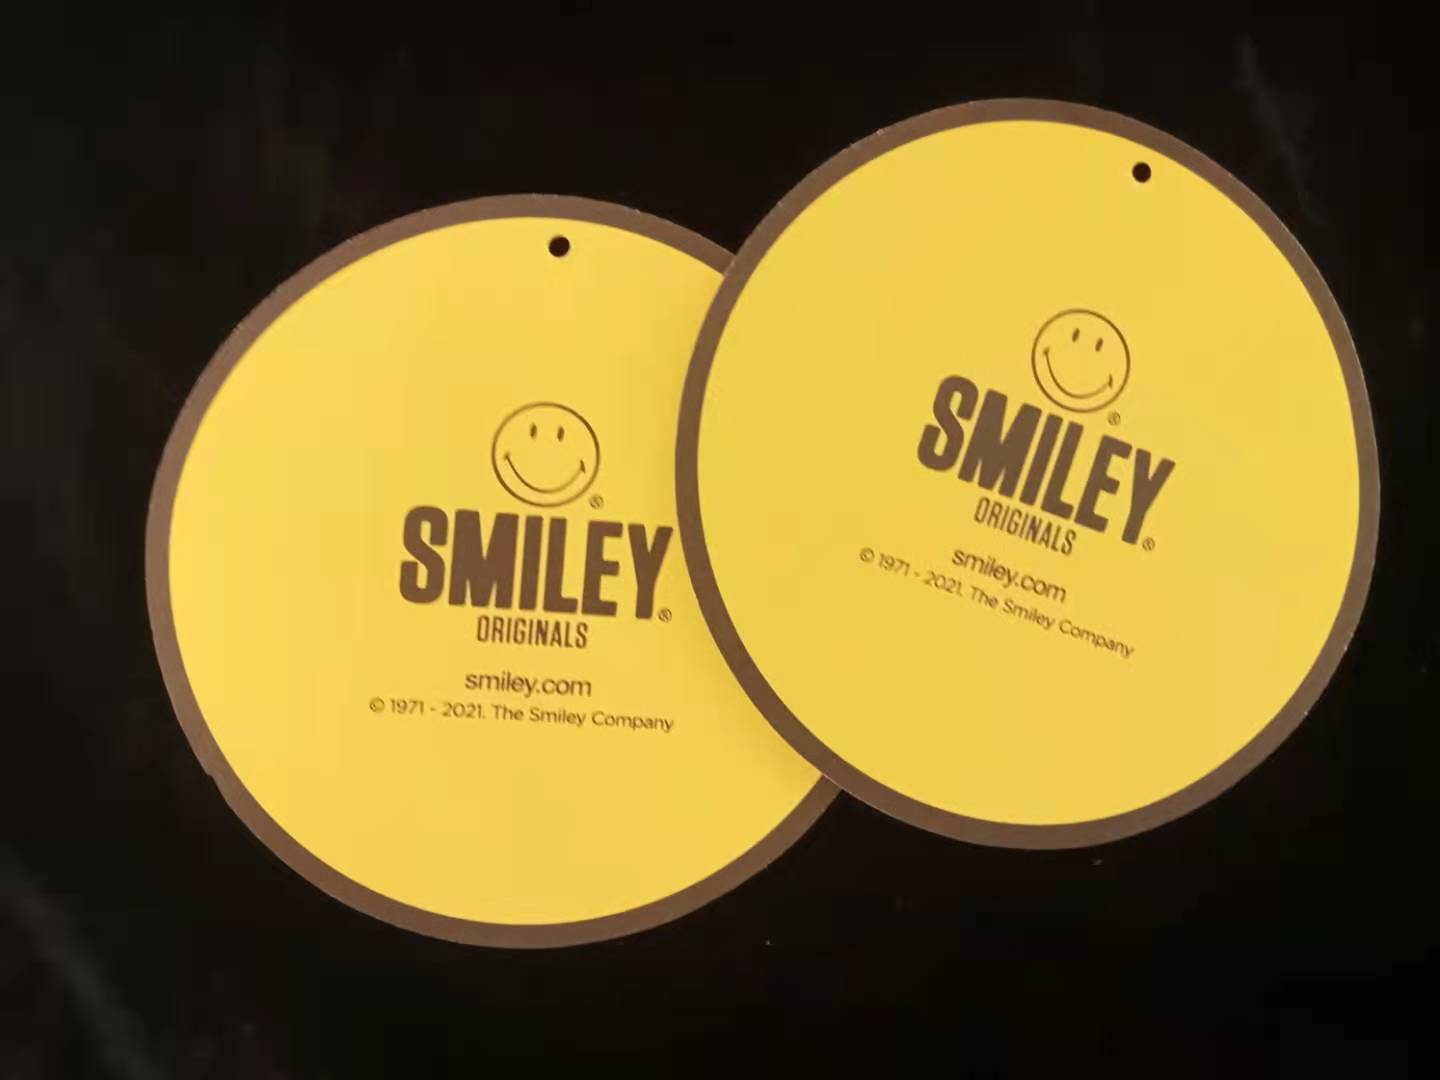 厂家直销黄色笑脸圆形吊牌 可用作多种商品包装辅料 特种纸吊牌 现货5